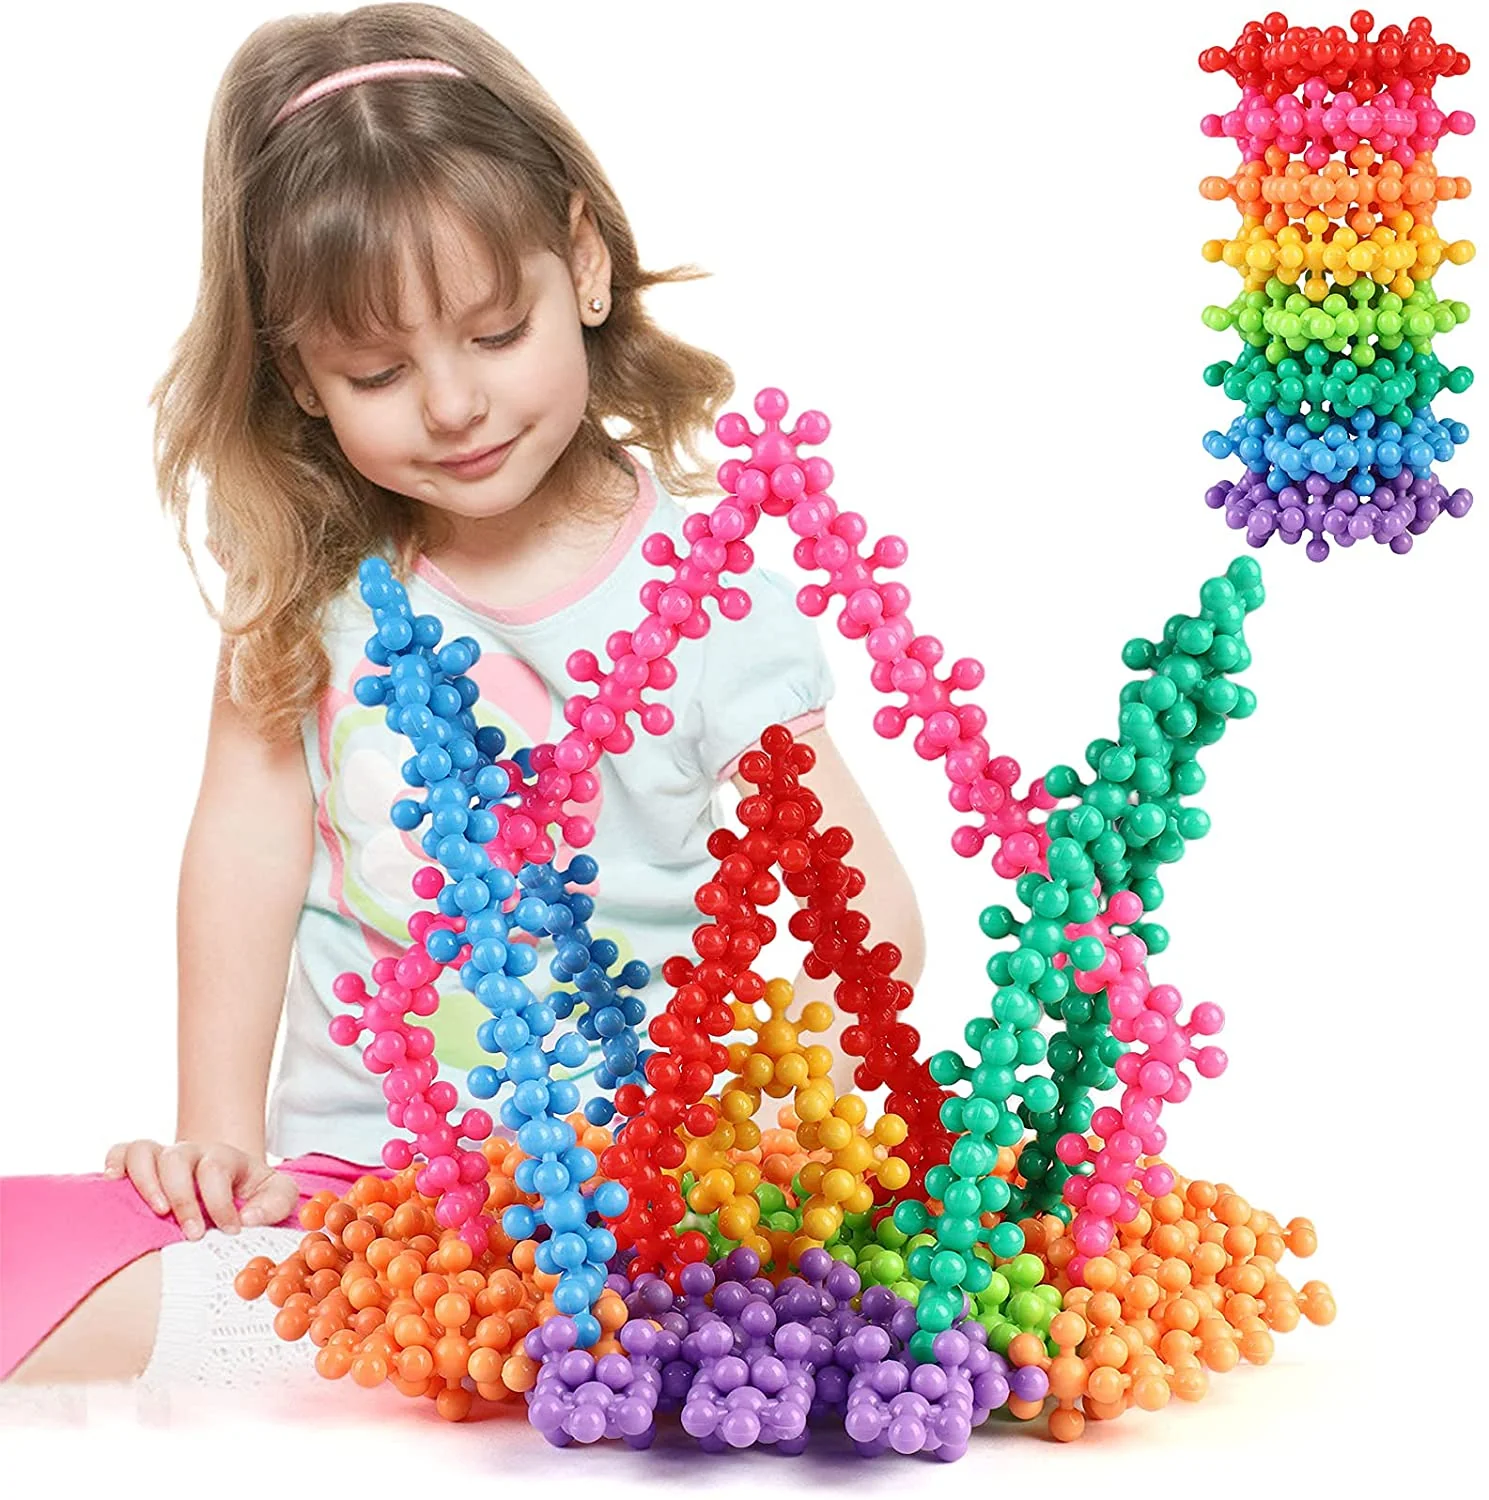 3D Building Blocks® - Underhåll barnen på ett kreativt sätt